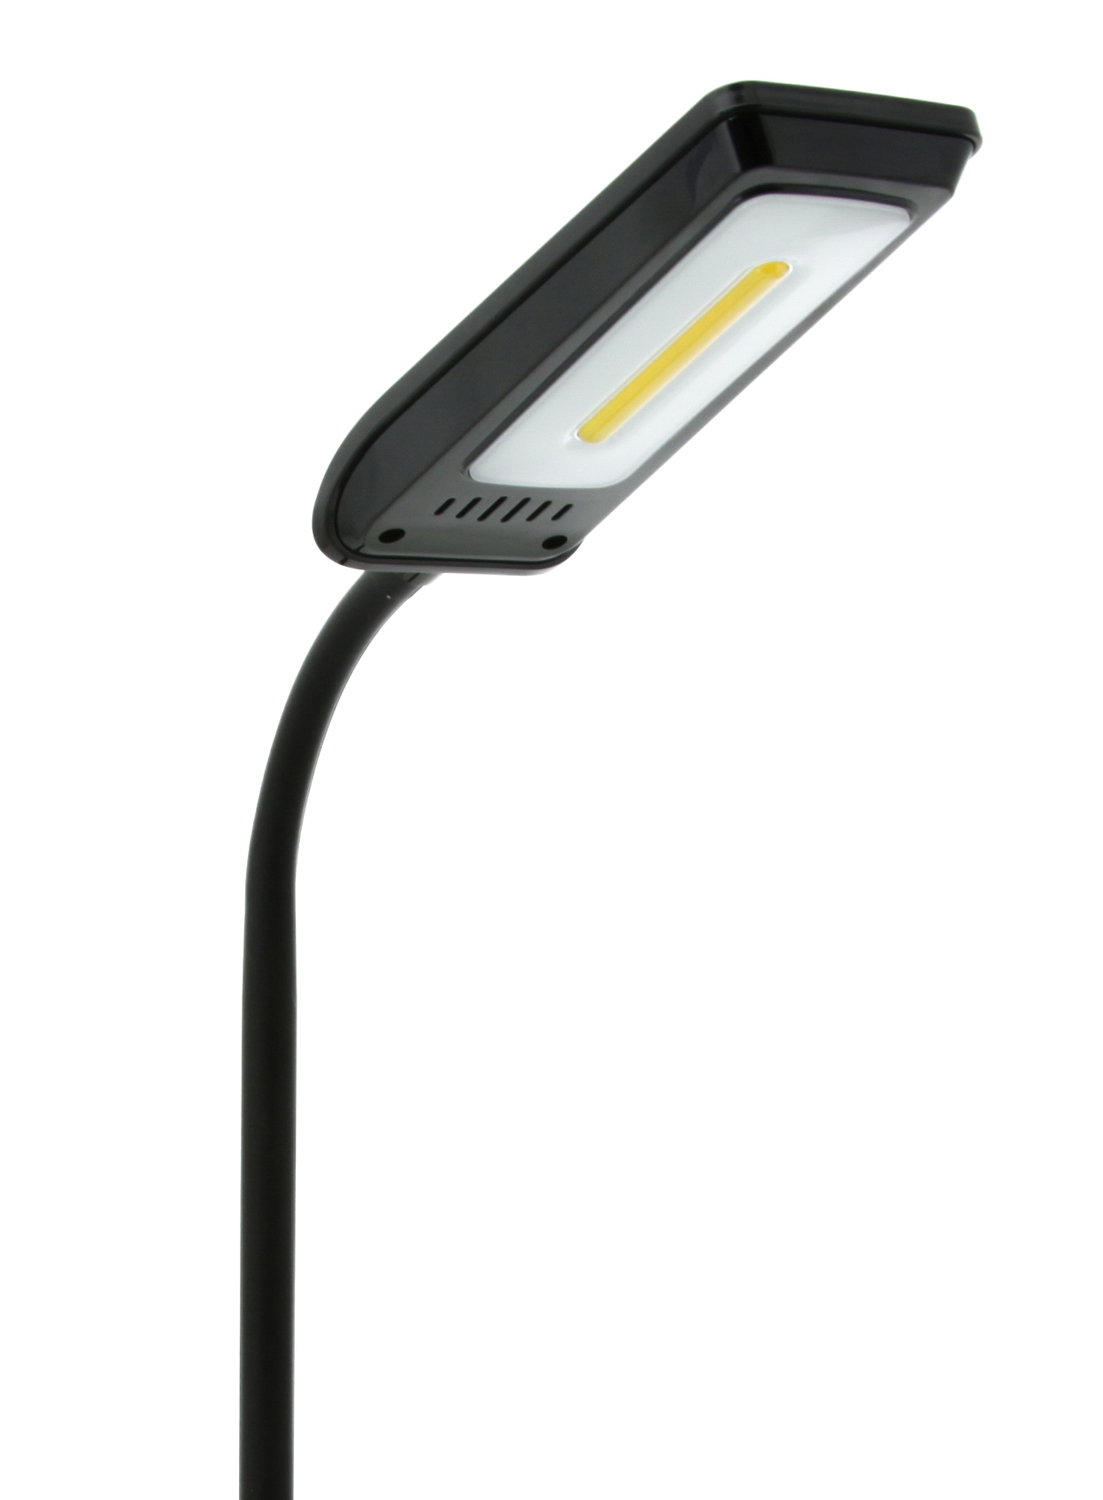 Картинка Настольная лампа светодиодная NATIONAL NL-67LED по разумной цене купить в интернет магазине mall.su